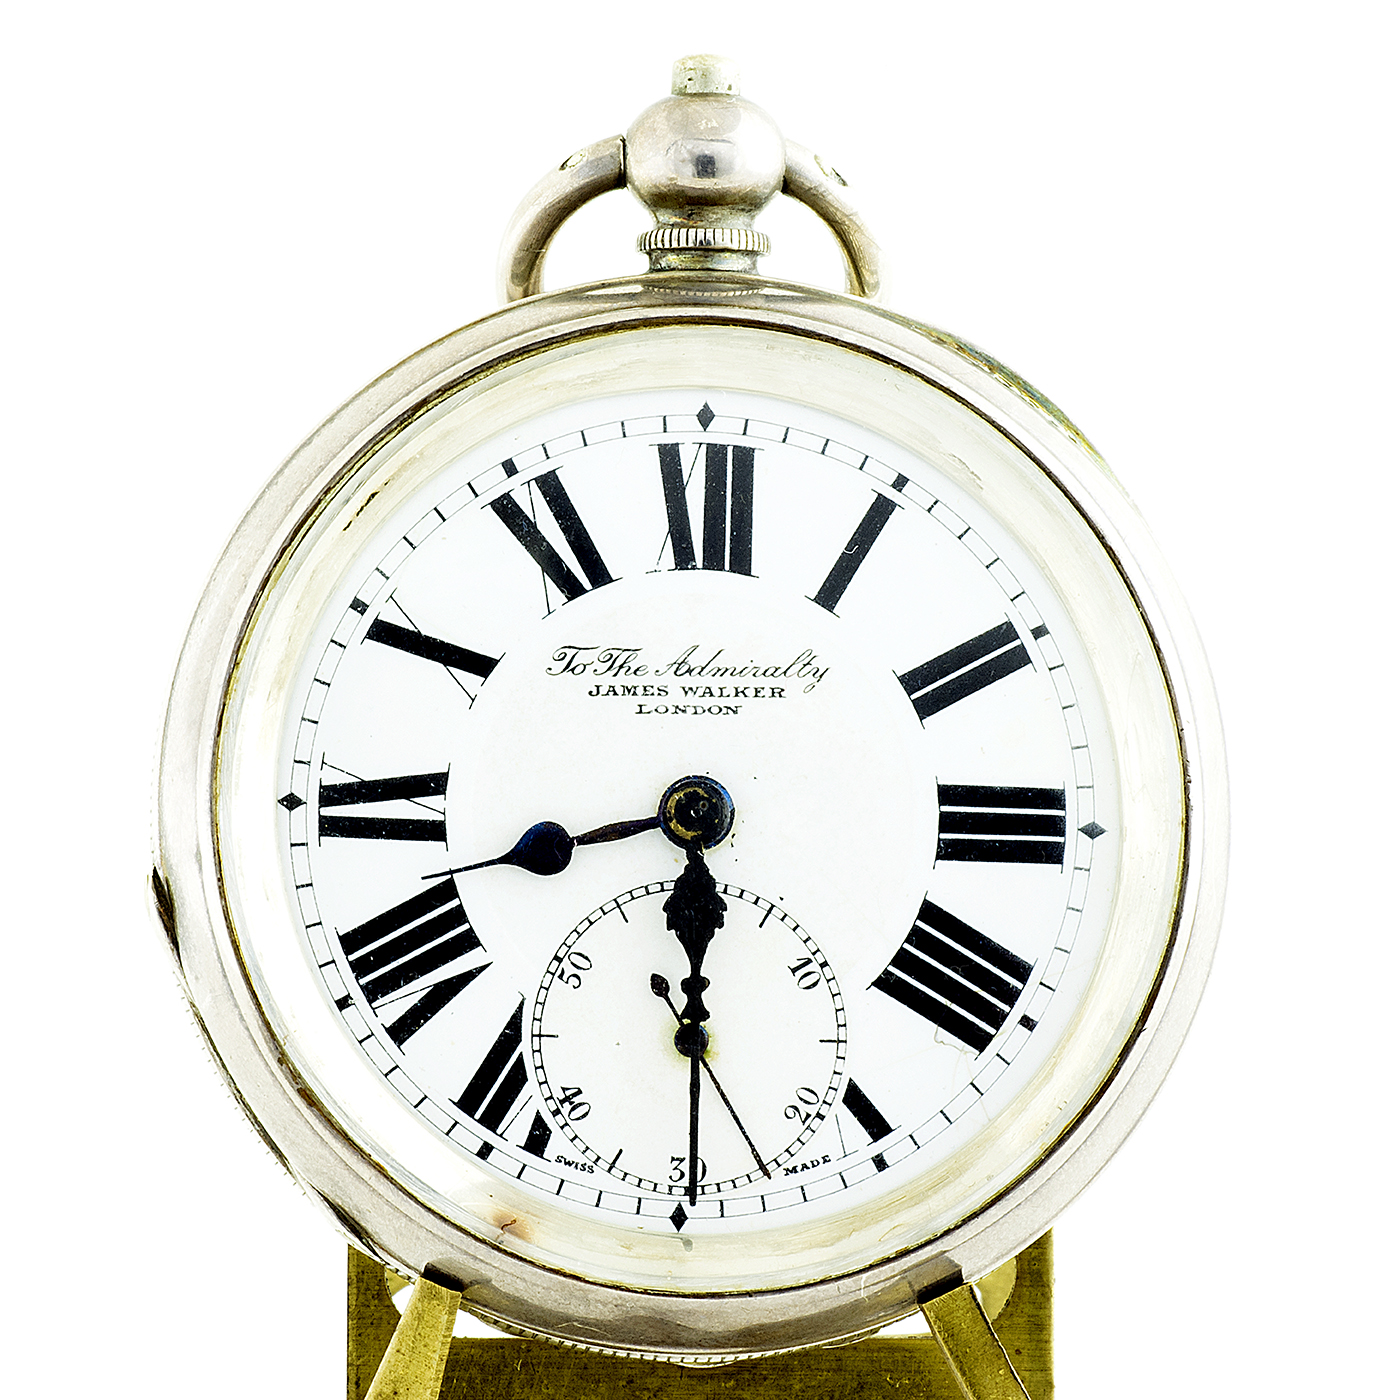 James Walker, London. Uhrmacher der Admiralität. Taschenuhr, Lepine. London, 1922.